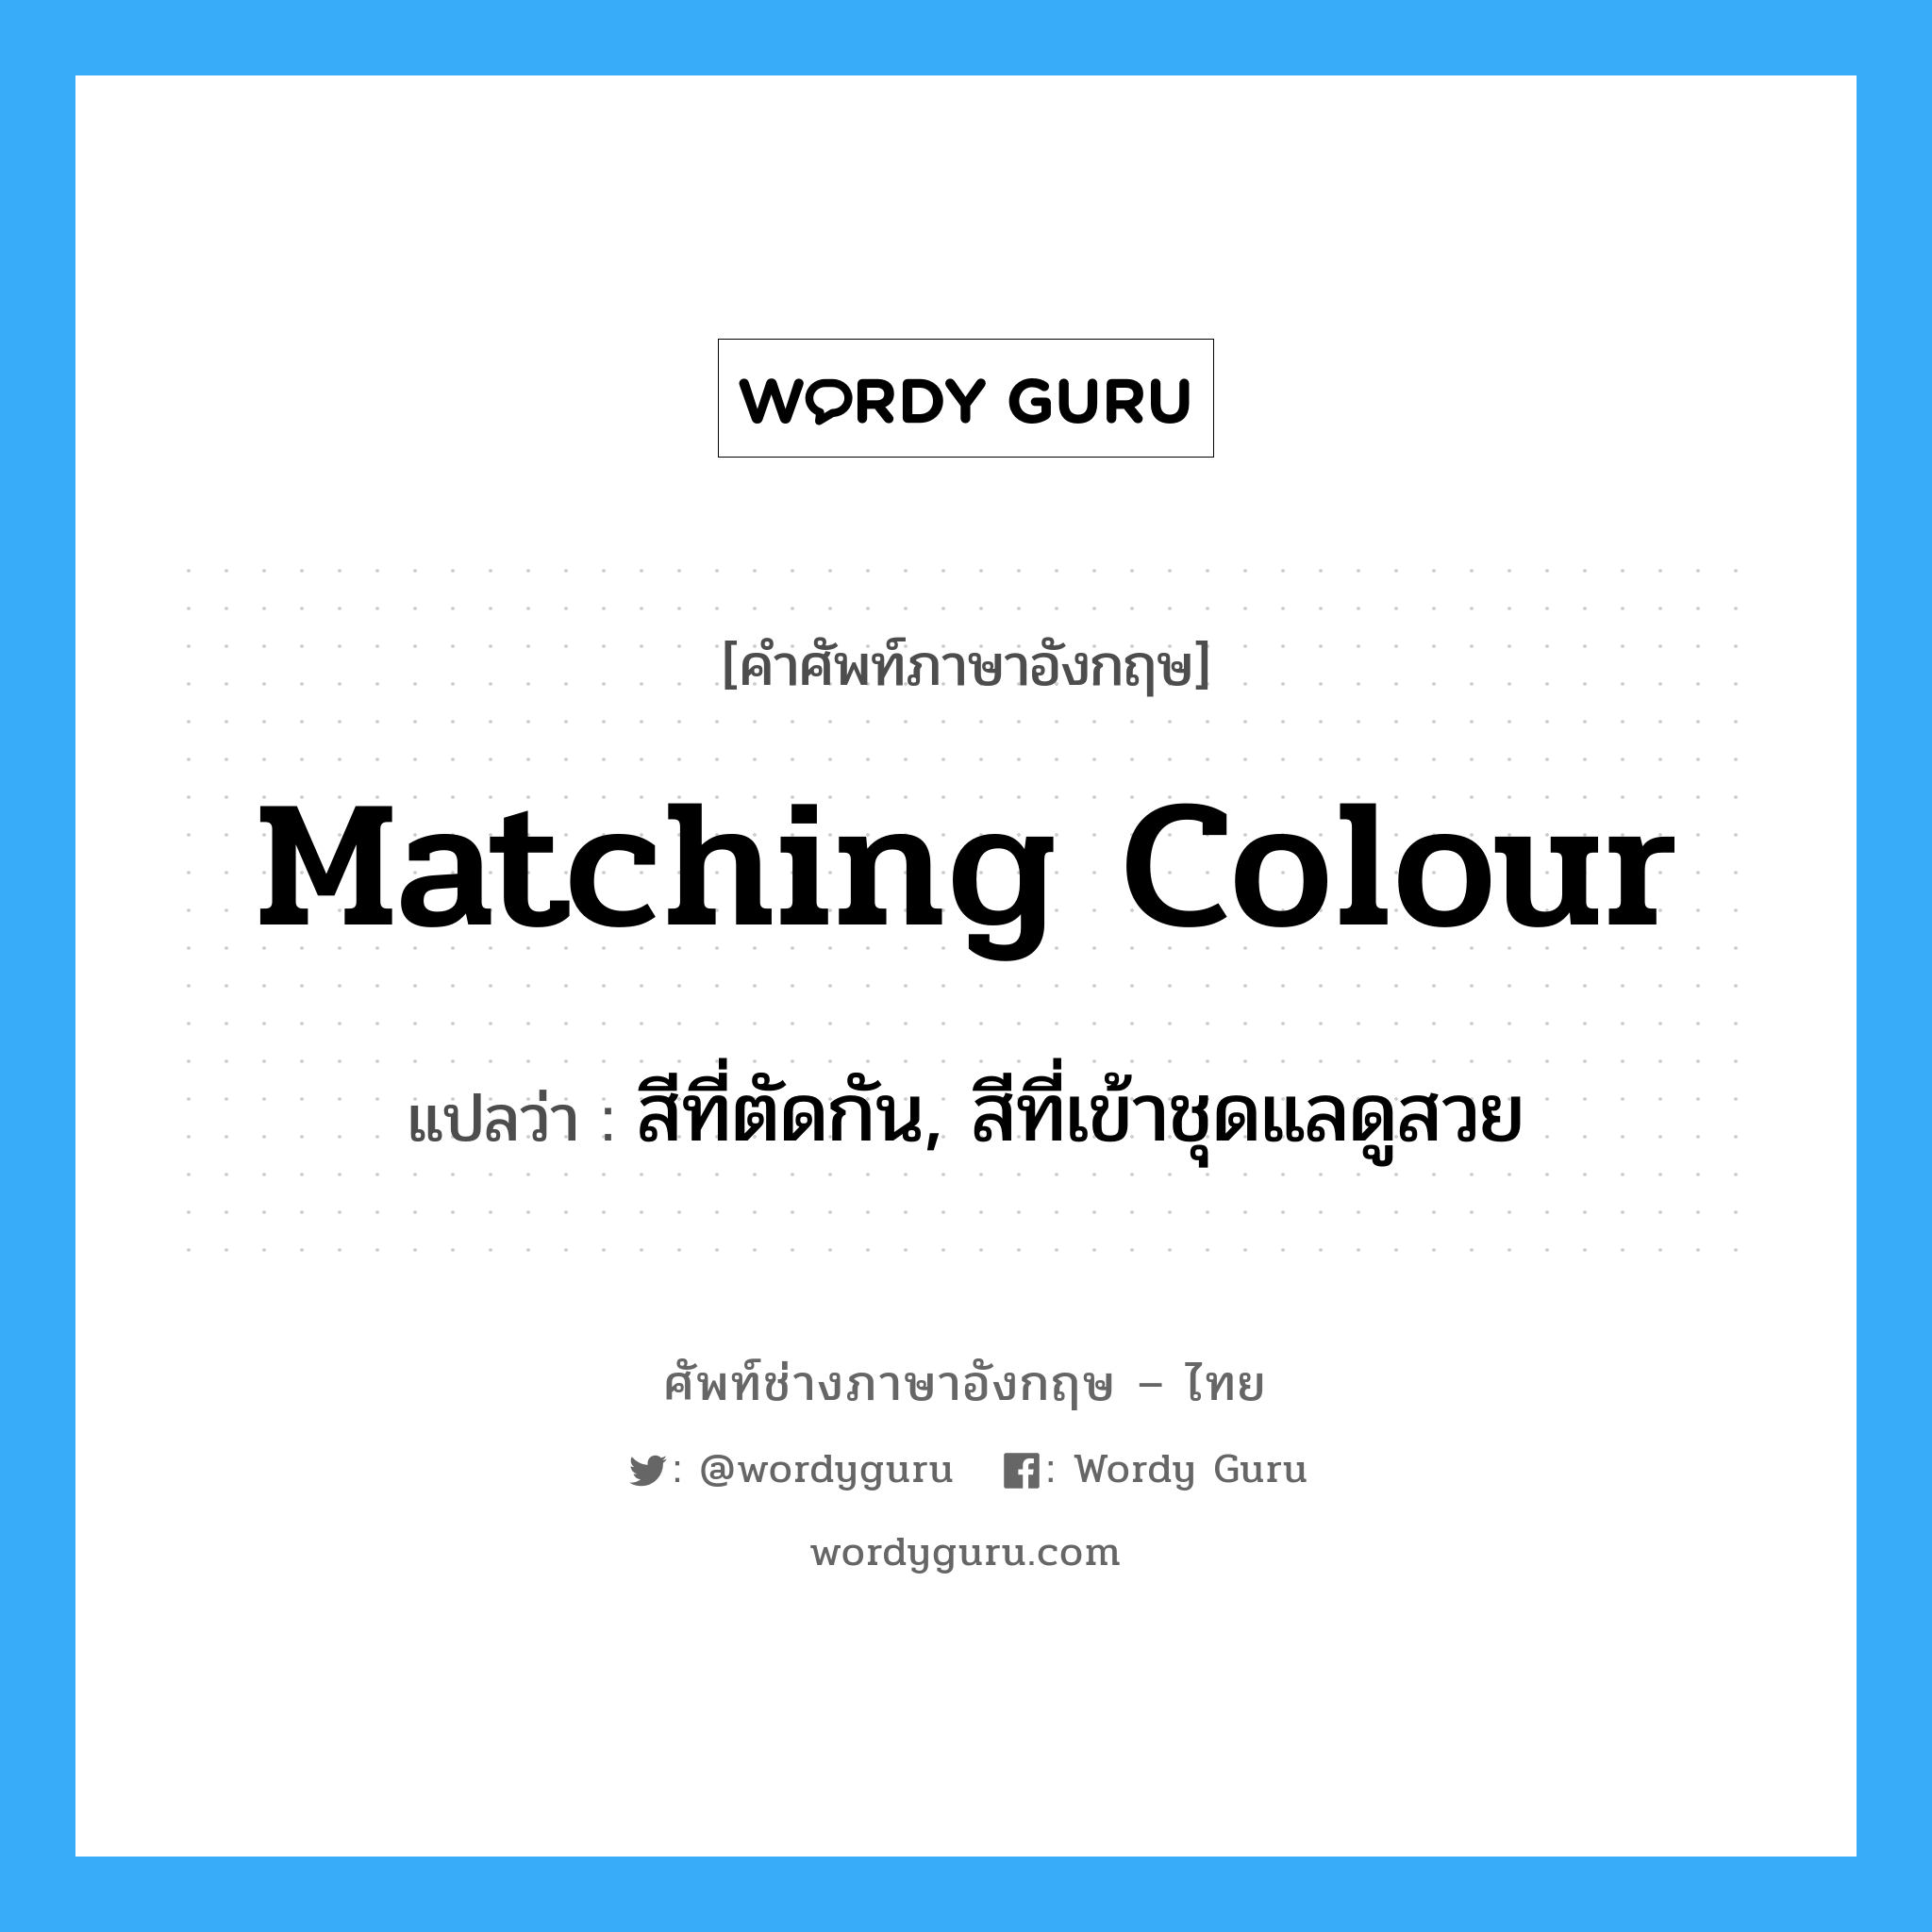 สีที่ตัดกัน, สีที่เข้าชุดแลดูสวย ภาษาอังกฤษ?, คำศัพท์ช่างภาษาอังกฤษ - ไทย สีที่ตัดกัน, สีที่เข้าชุดแลดูสวย คำศัพท์ภาษาอังกฤษ สีที่ตัดกัน, สีที่เข้าชุดแลดูสวย แปลว่า matching colour